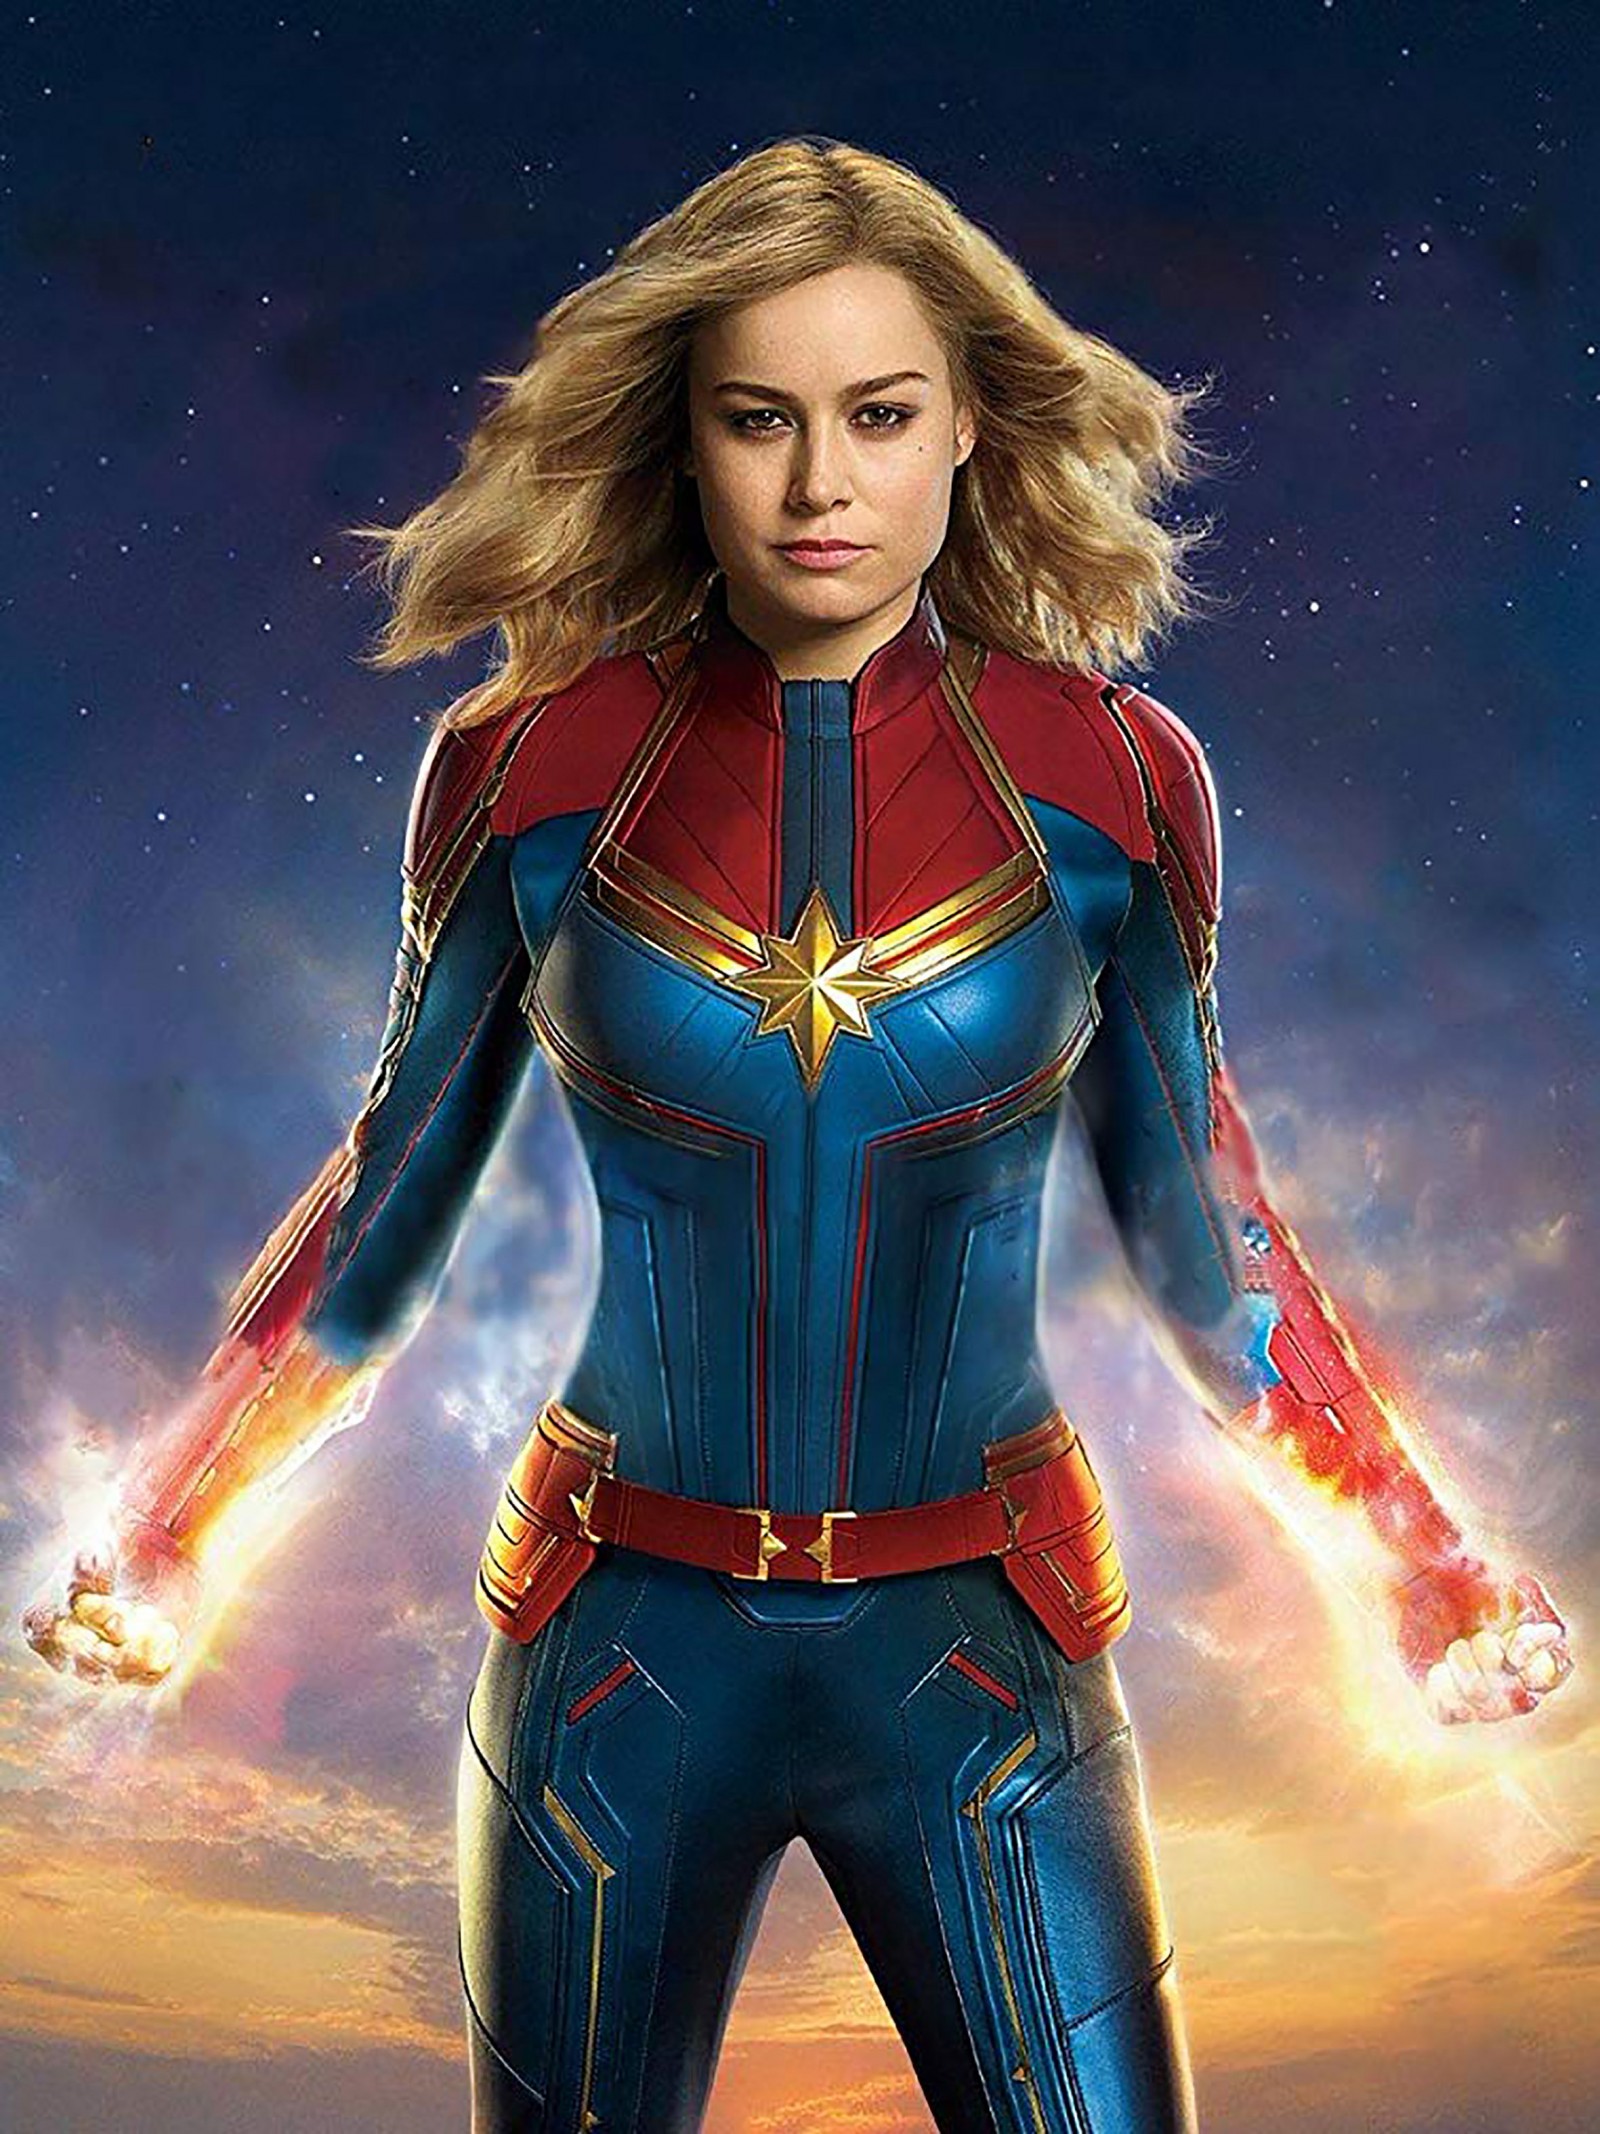 Captain Marvel” - Phim Về Nữ Siêu Anh Hùng Được Chờ Đợi - Báo Cần Thơ Online